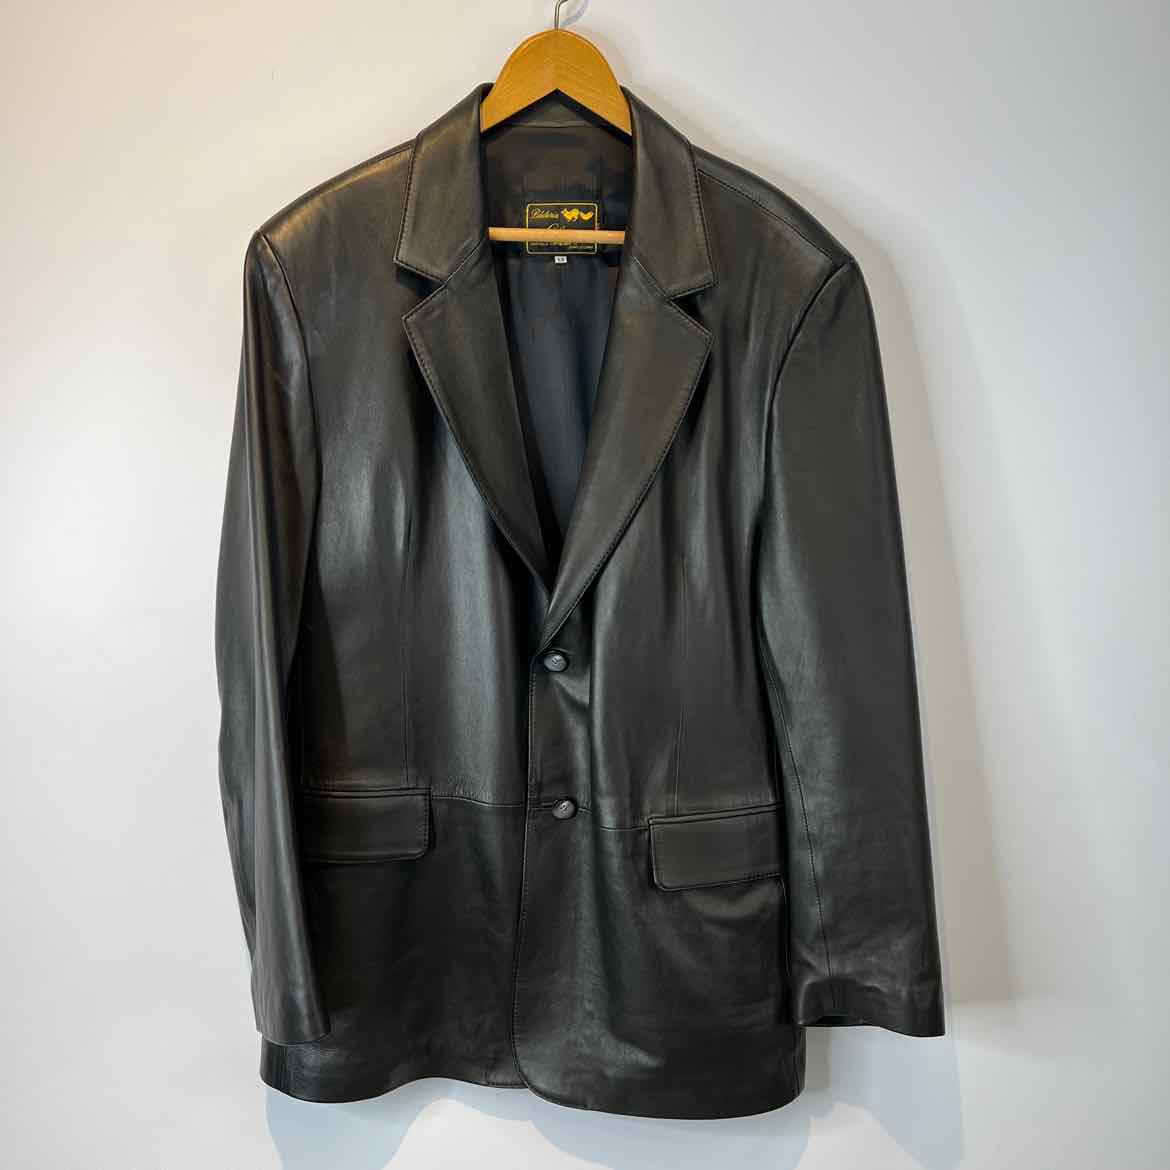 SOLSANA Jacket Black / XL SOLSANA Mens Size XL Black Leather Jacket